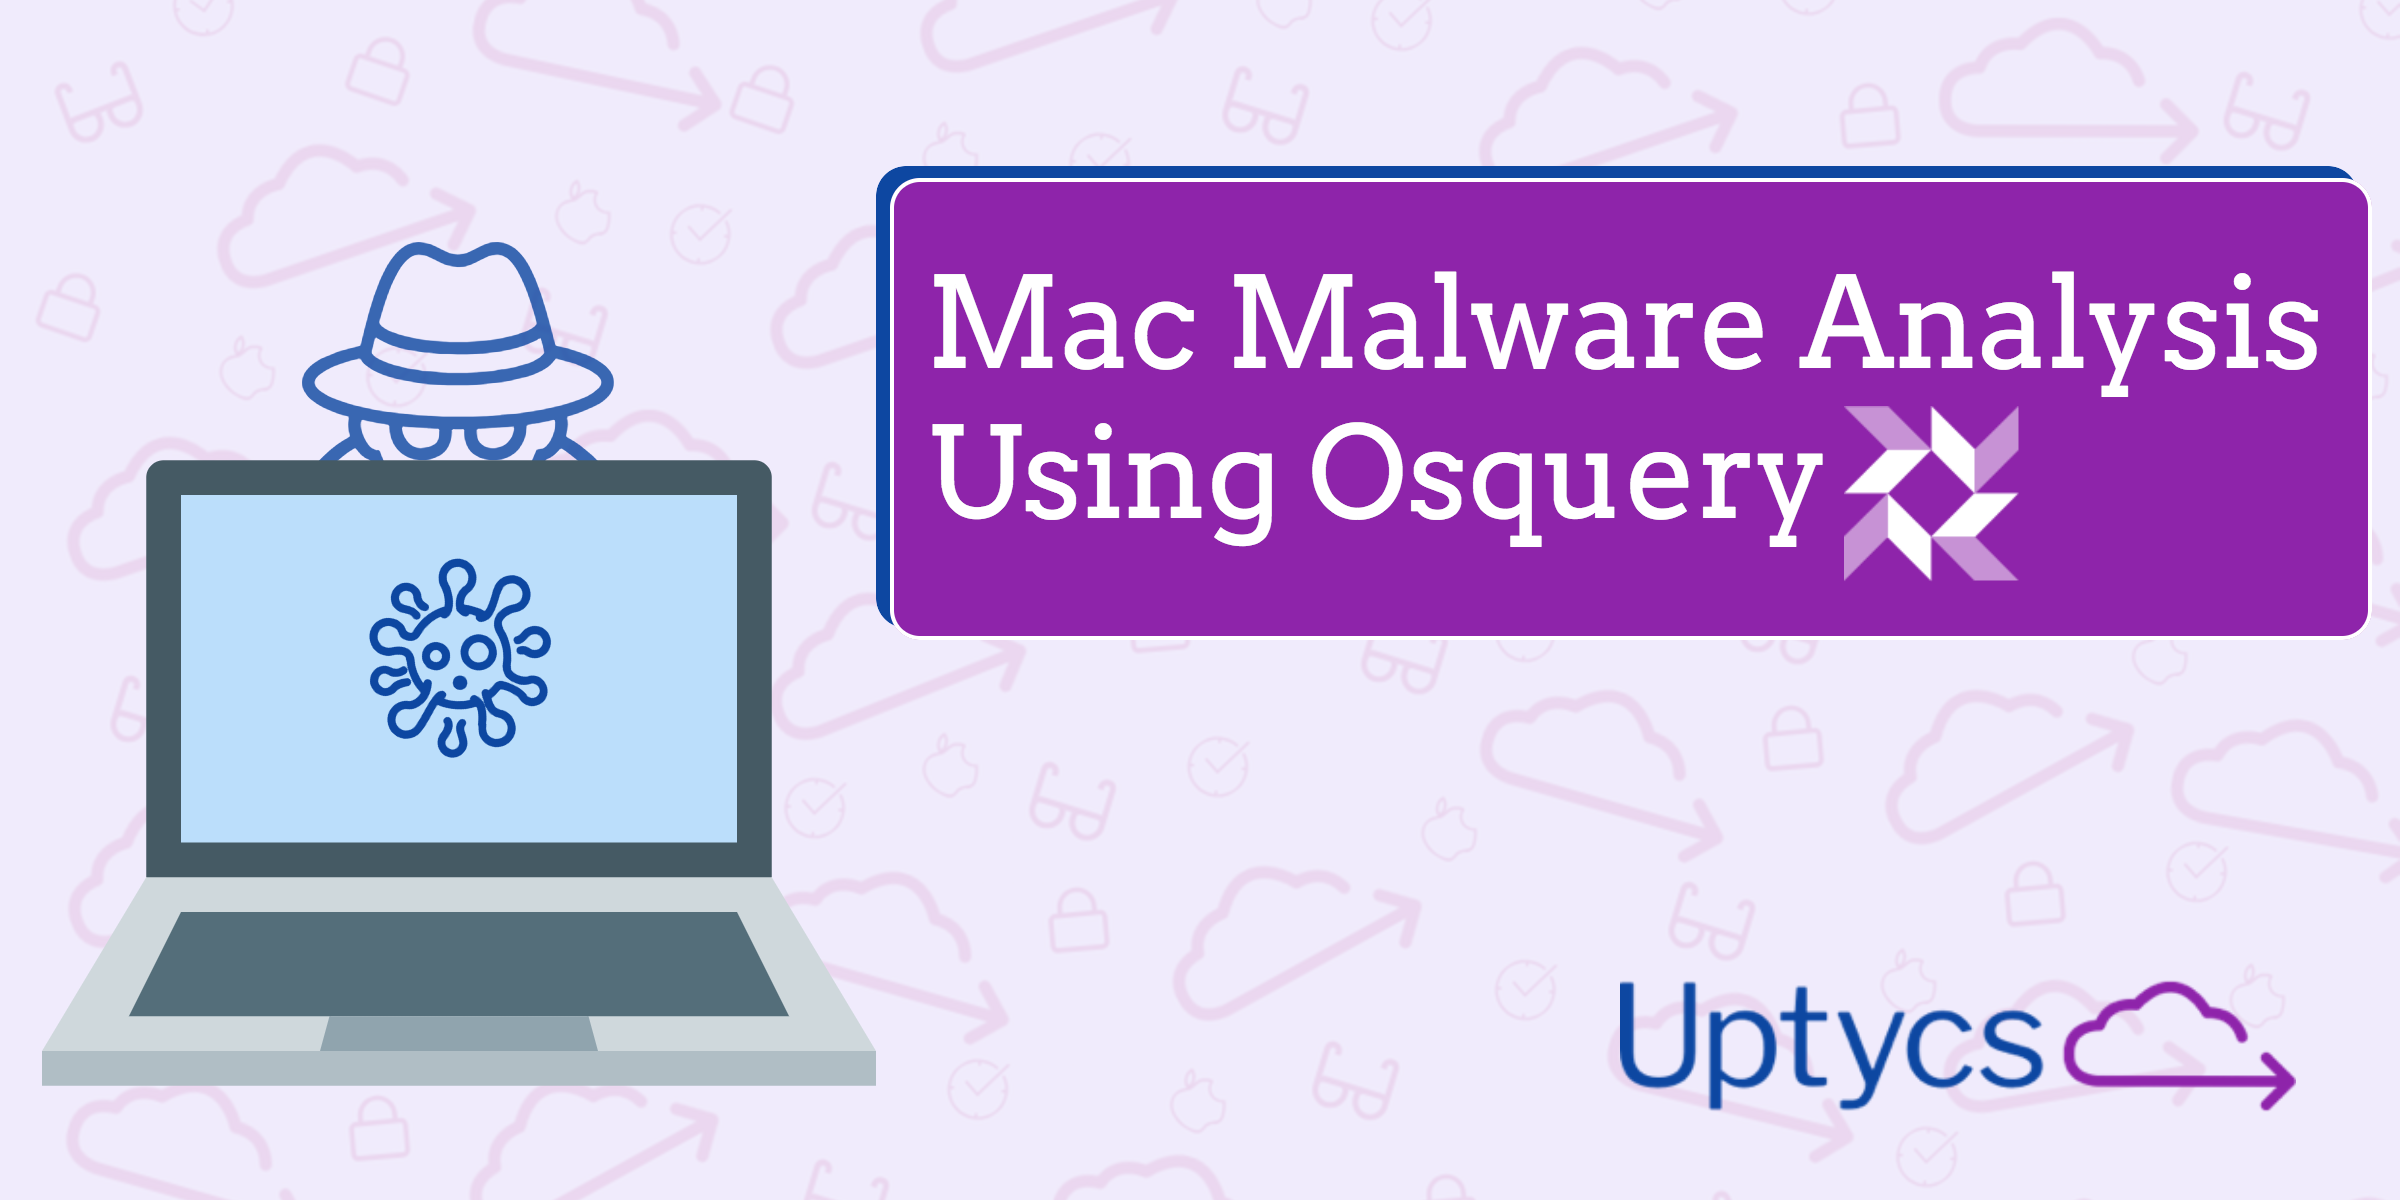 Blog Post_ Mac Malware Analysis Using Osquery